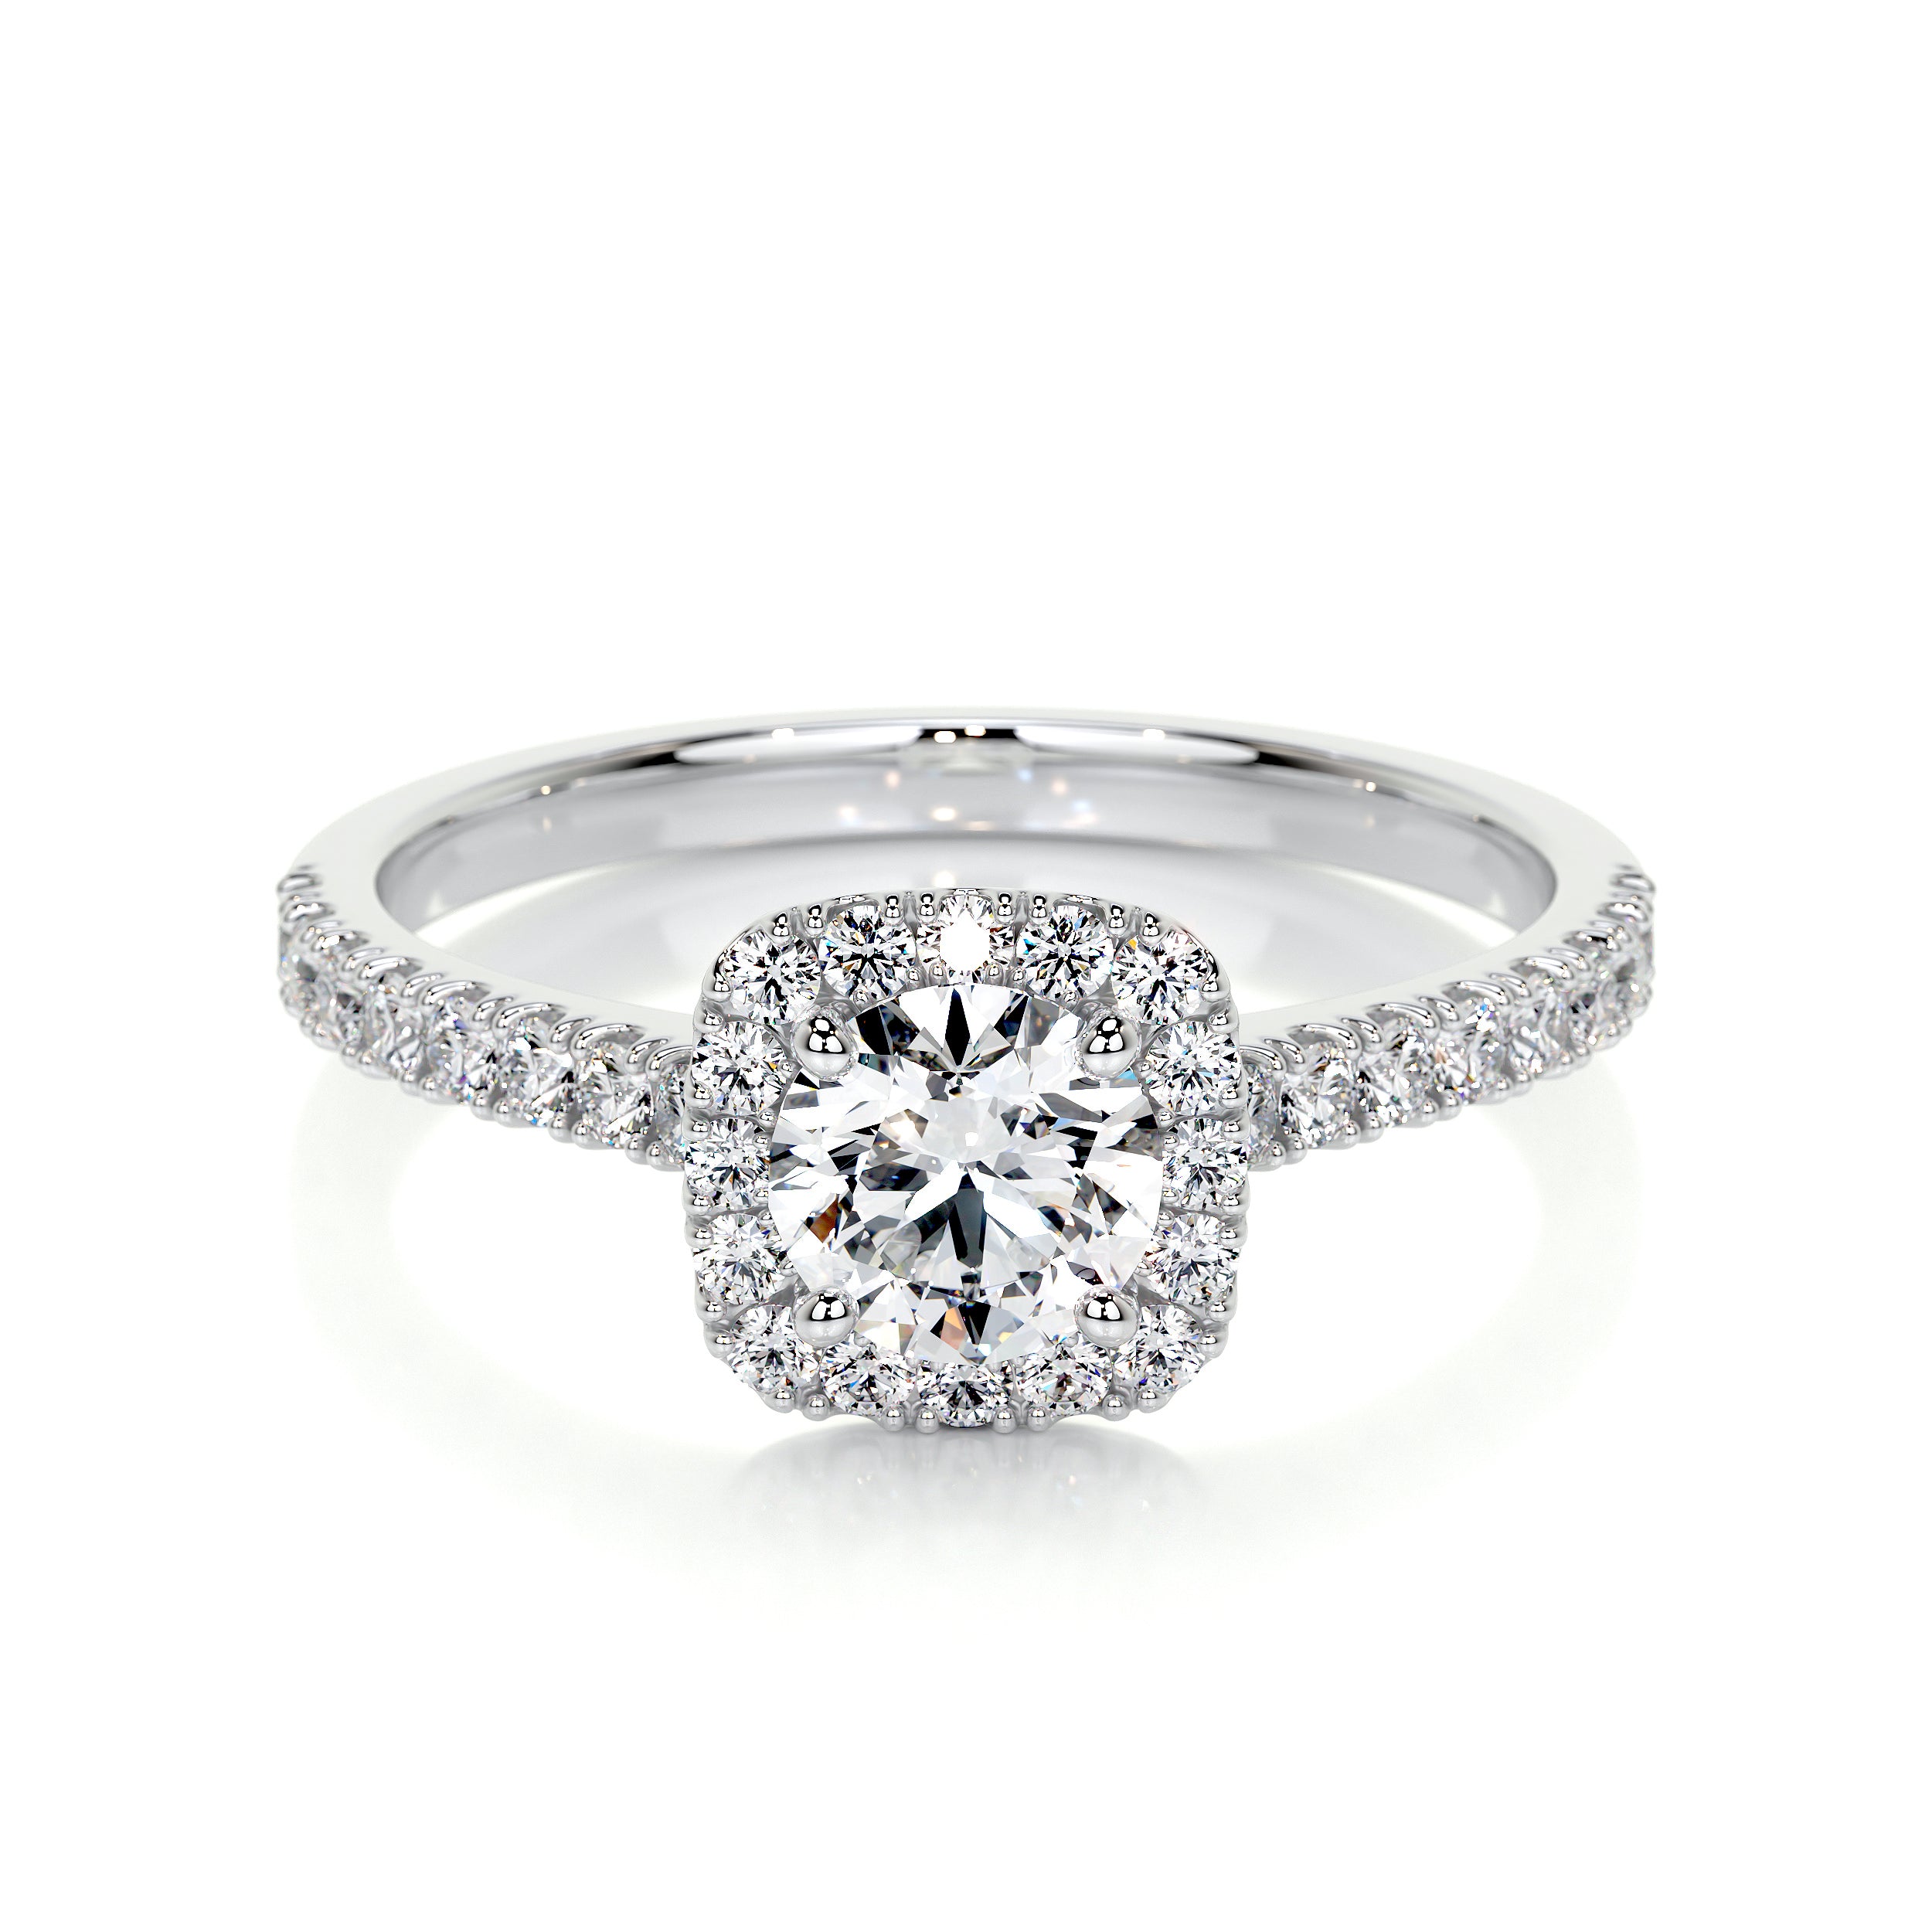 1 Carat Round Brilliant Cut Diamond Engagement Ring